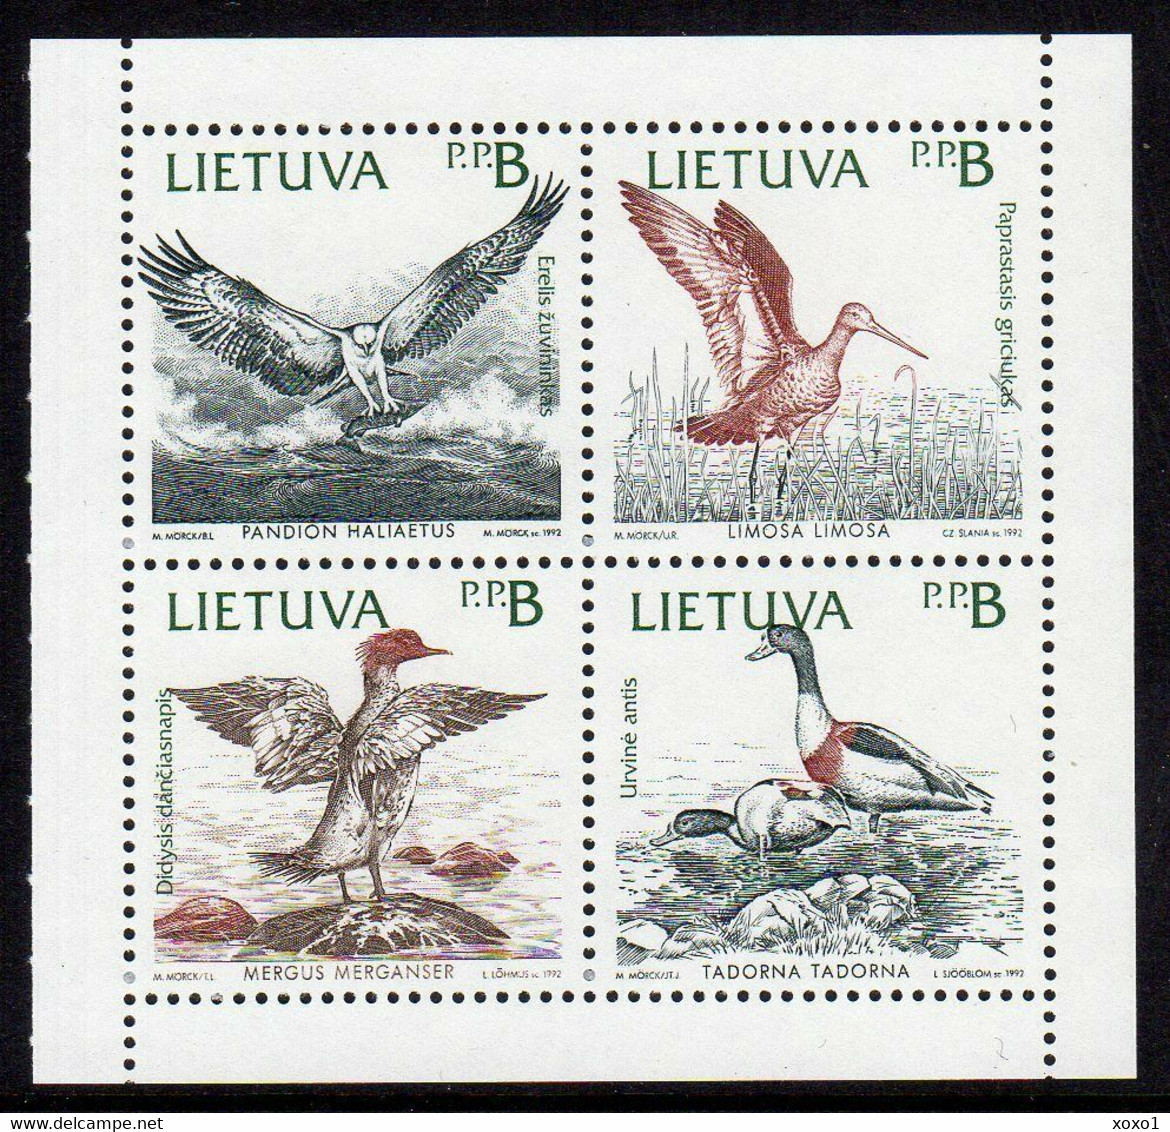 Lithuania 1992 MiNr. 501-4 Litauen Joint Issues BIRDS Osprey, Black-tailed Godwit, Merganser, Shelduck 4v Mnh ** 2.50 € - Litouwen